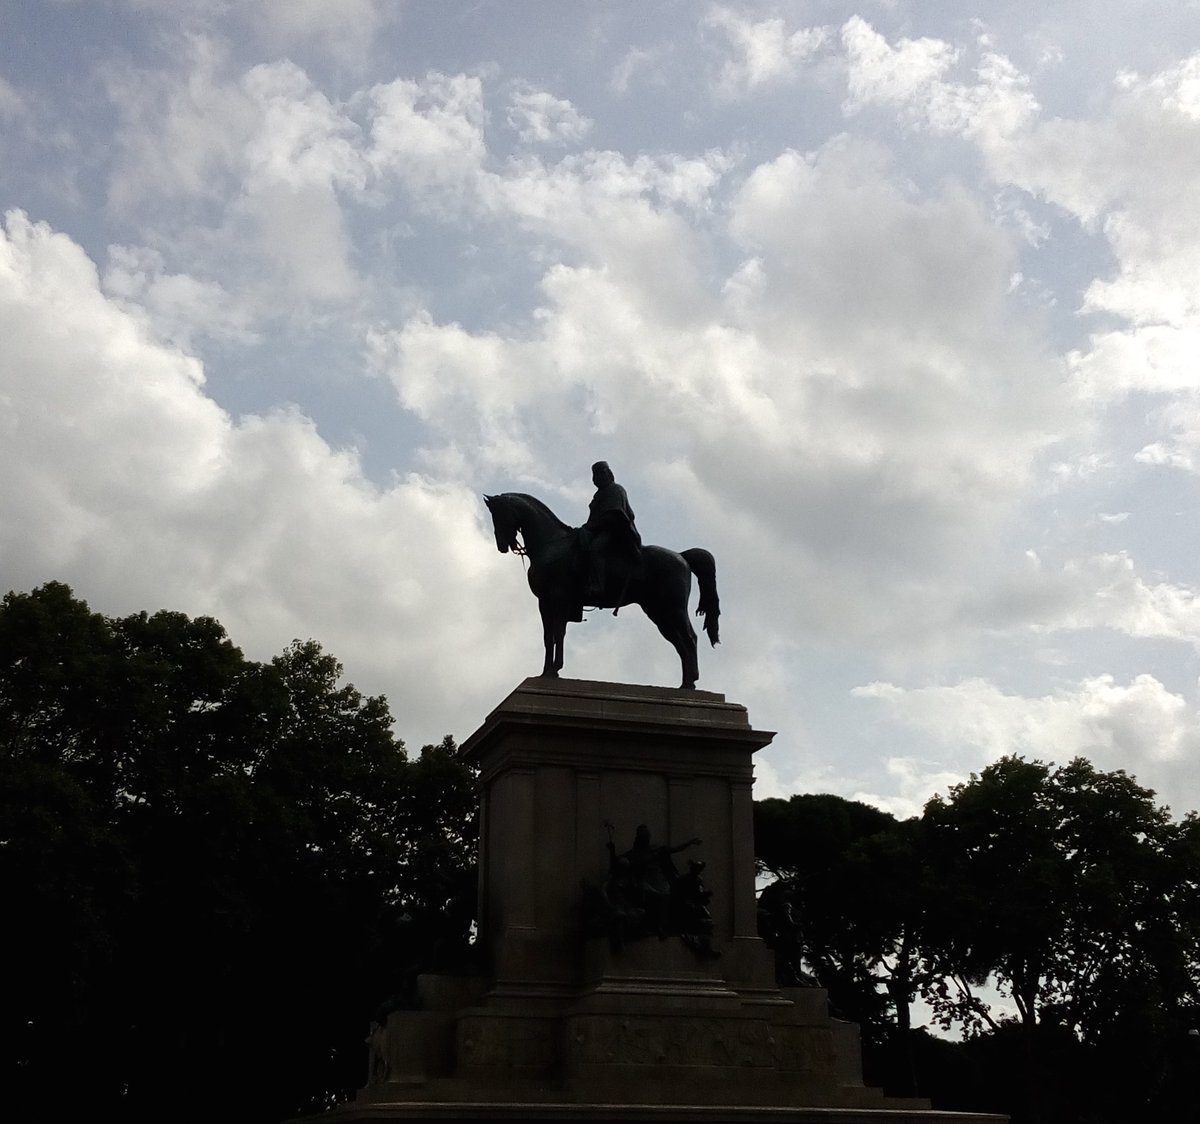 #Gianicolo
Anche con il cielo nuvoloso la statua di Garibaldi è imponente.
In ricordo della gloriosa resistenza della #RepubblicaRomana del 1849 all'assedio delle truppe francesi!
#PhotoMW #MuseumWeek #MausoleoGaribaldino #PortaSanPancrazio